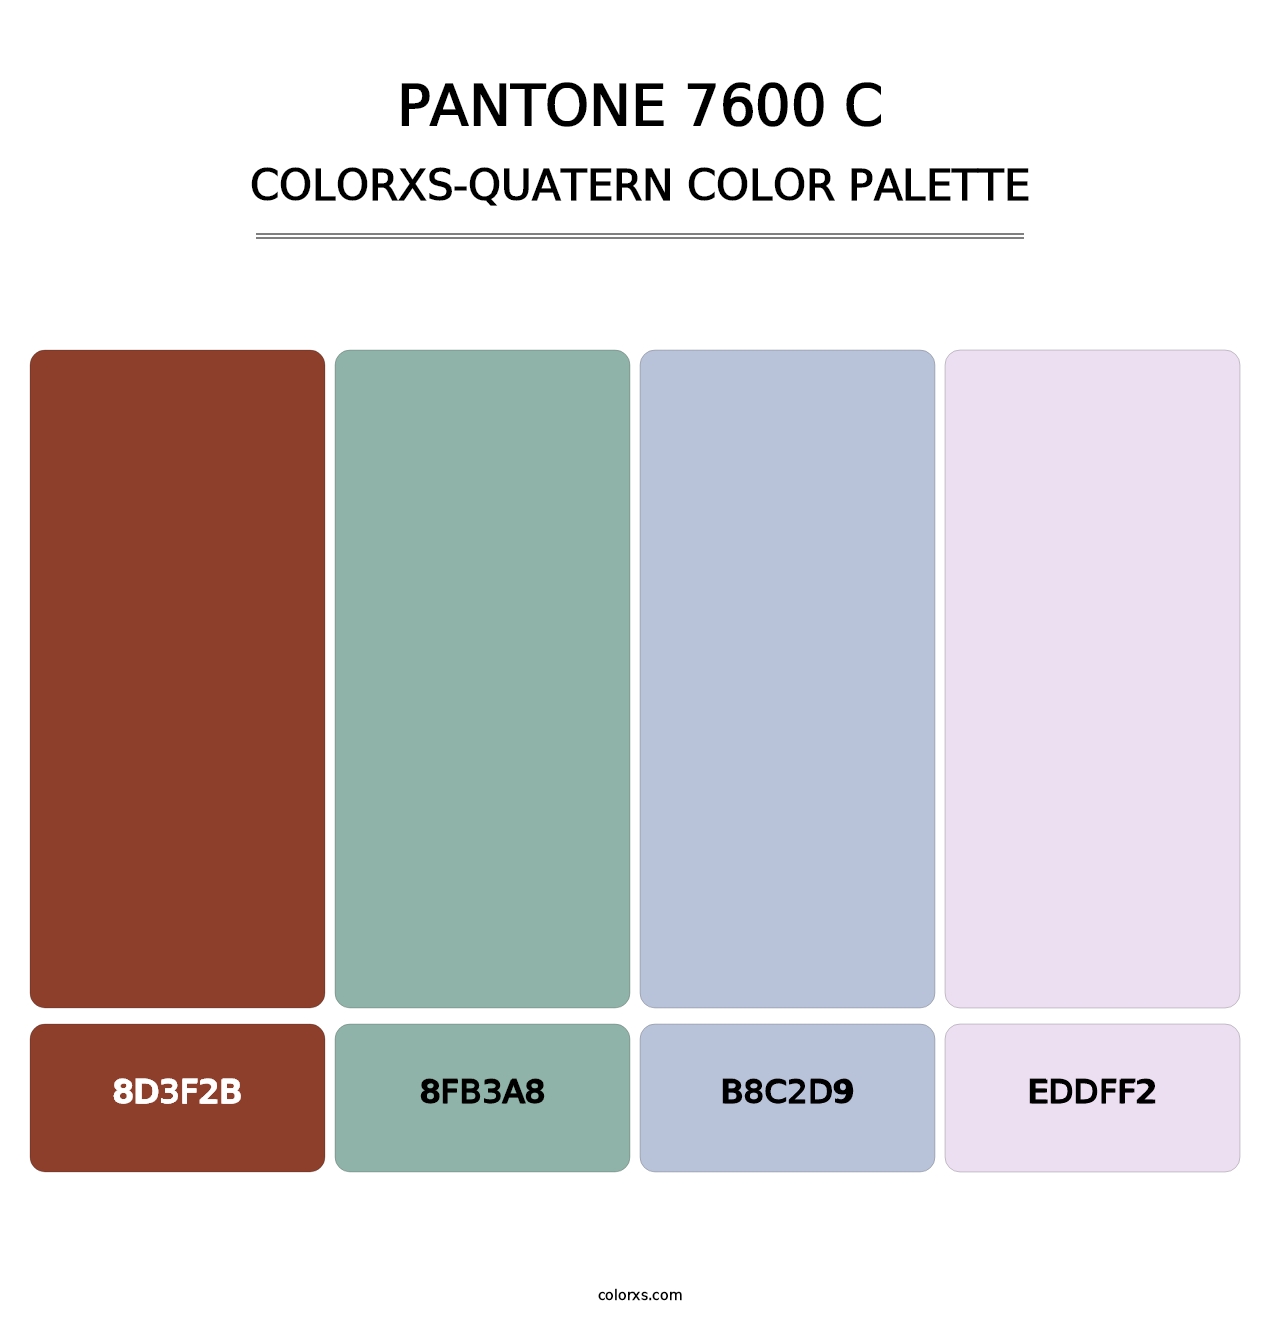 PANTONE 7600 C - Colorxs Quatern Palette